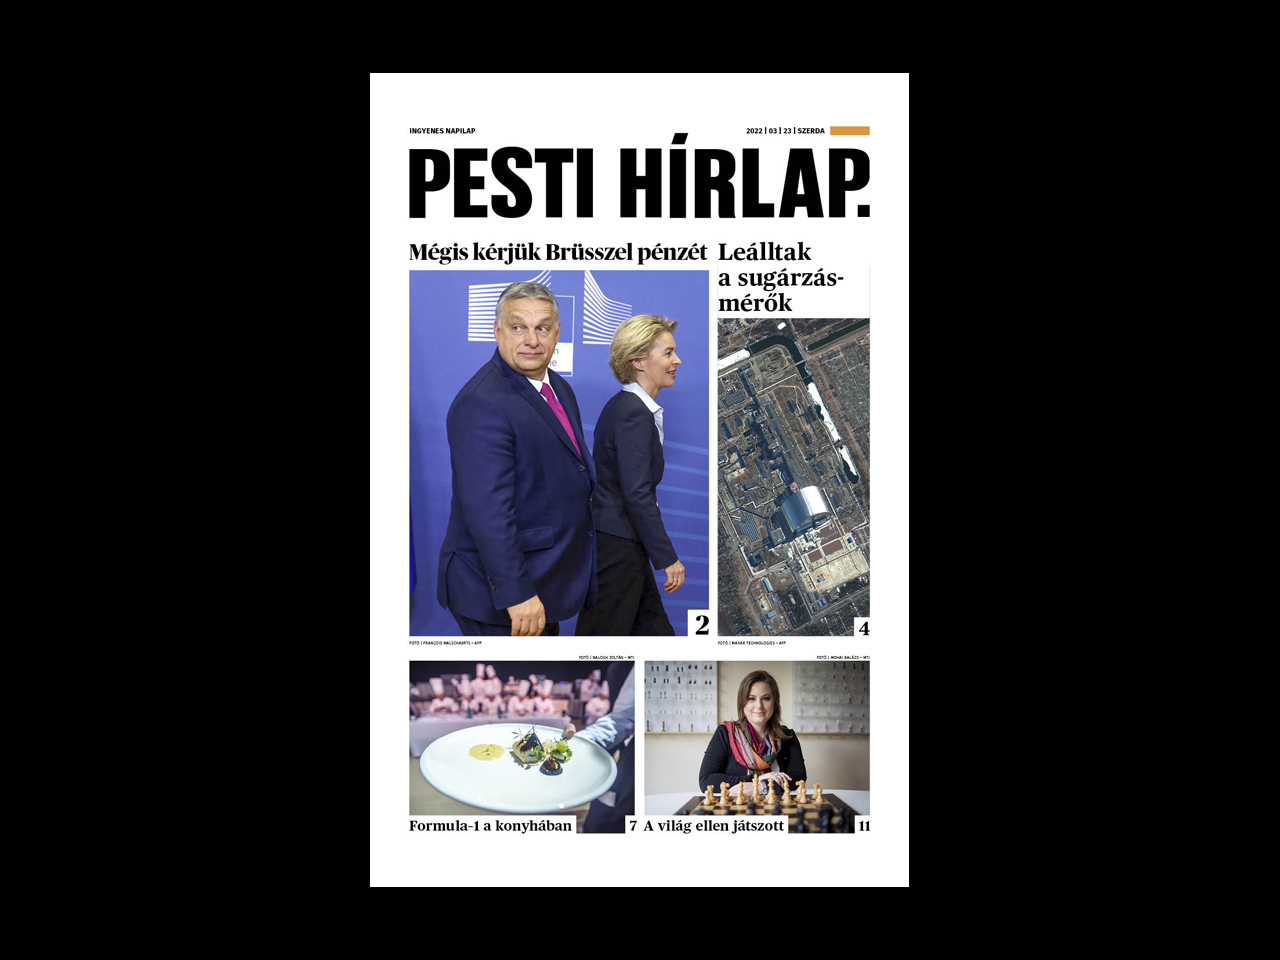 Mégis kérjük a korábban lemondott pénzt az EU-tól; Budapestre figyel a gasztrovilág – megjelent a Pesti Hírlap